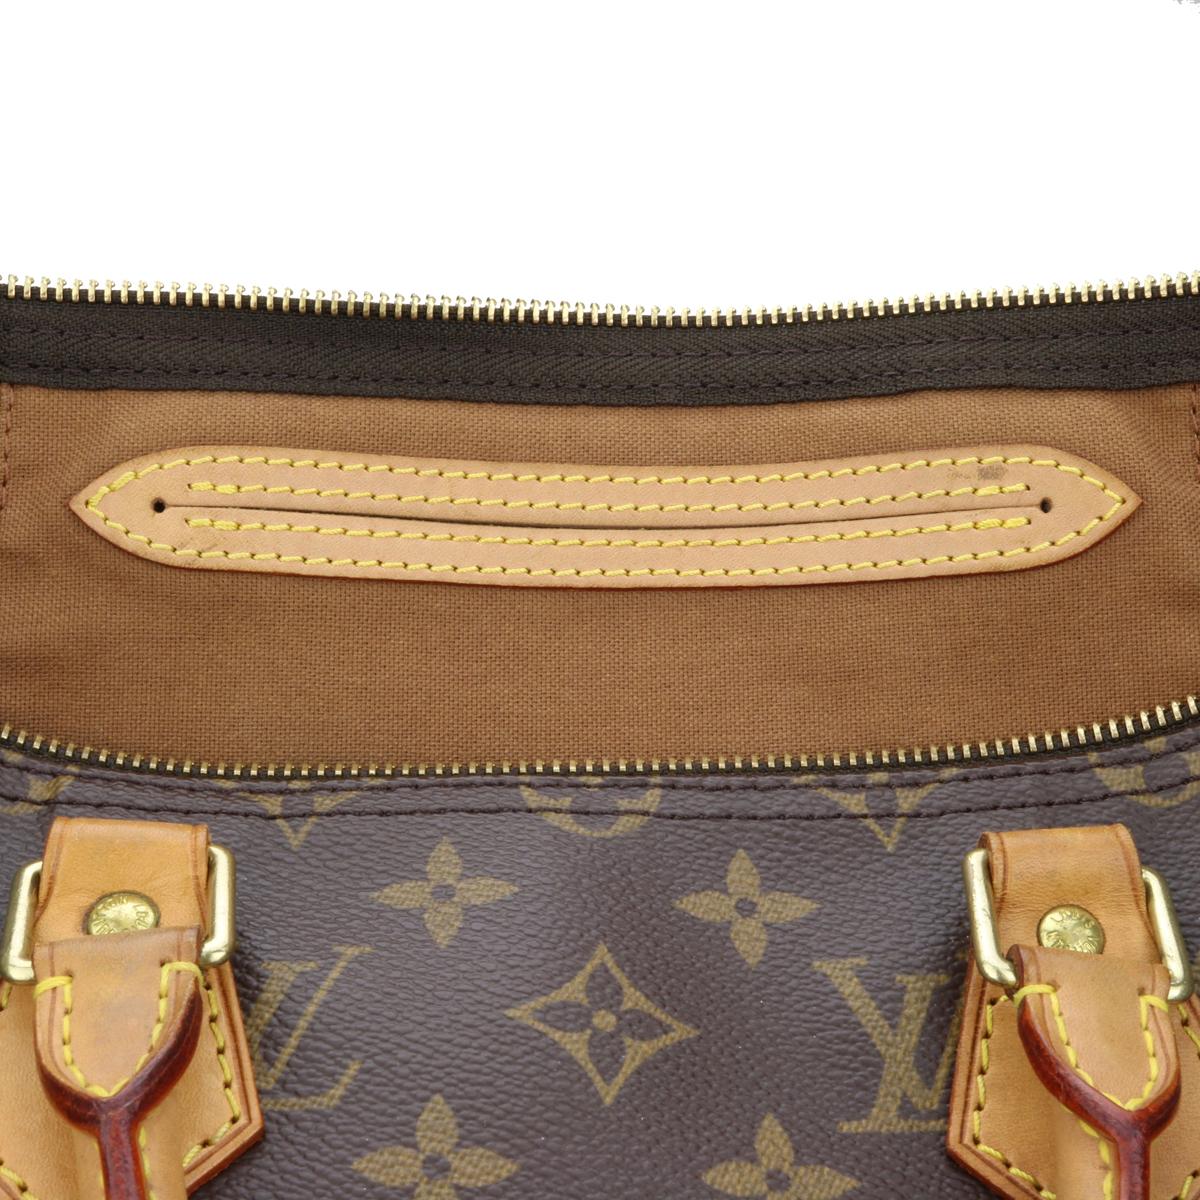 Louis Vuitton Speedy 35 Bag in Monogram 2005 12